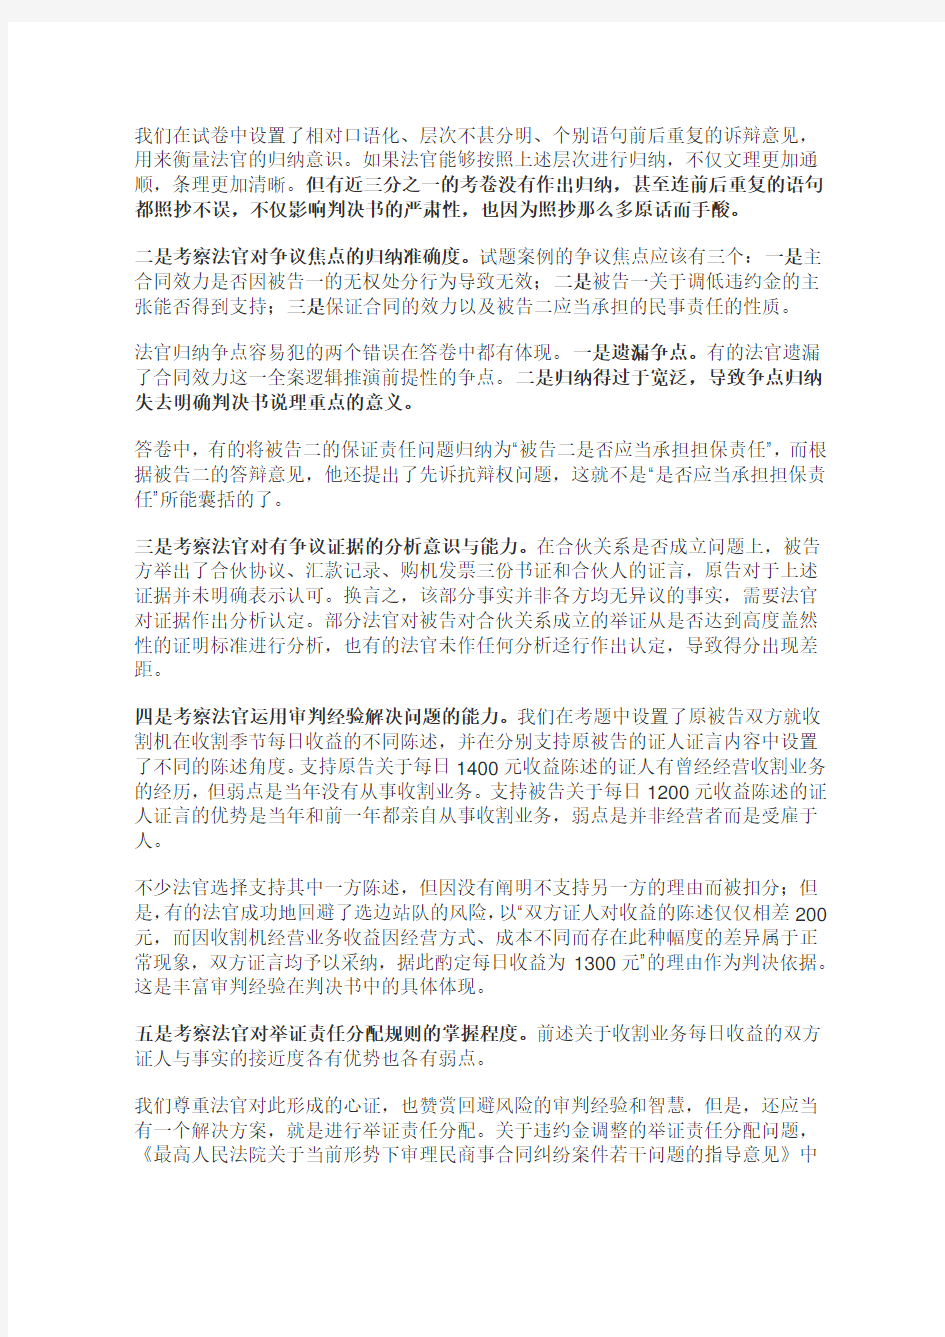 江苏法官员额制考试出题与评分情况说明